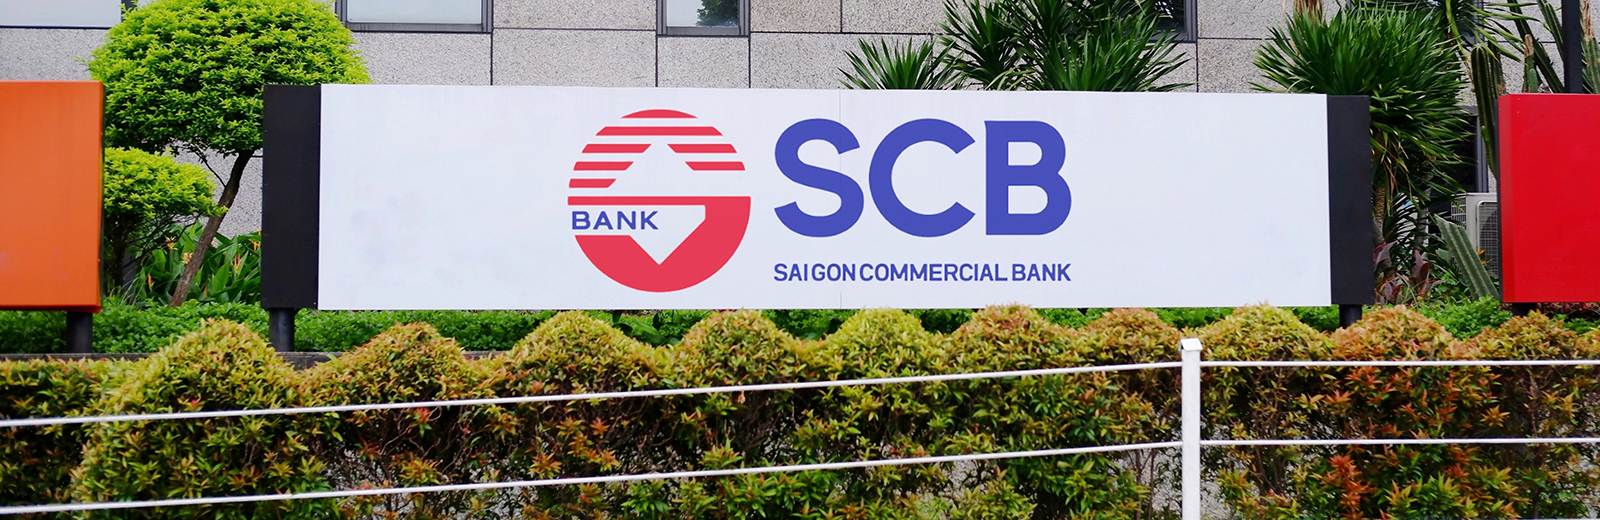 Saigon Commercial Bank sign